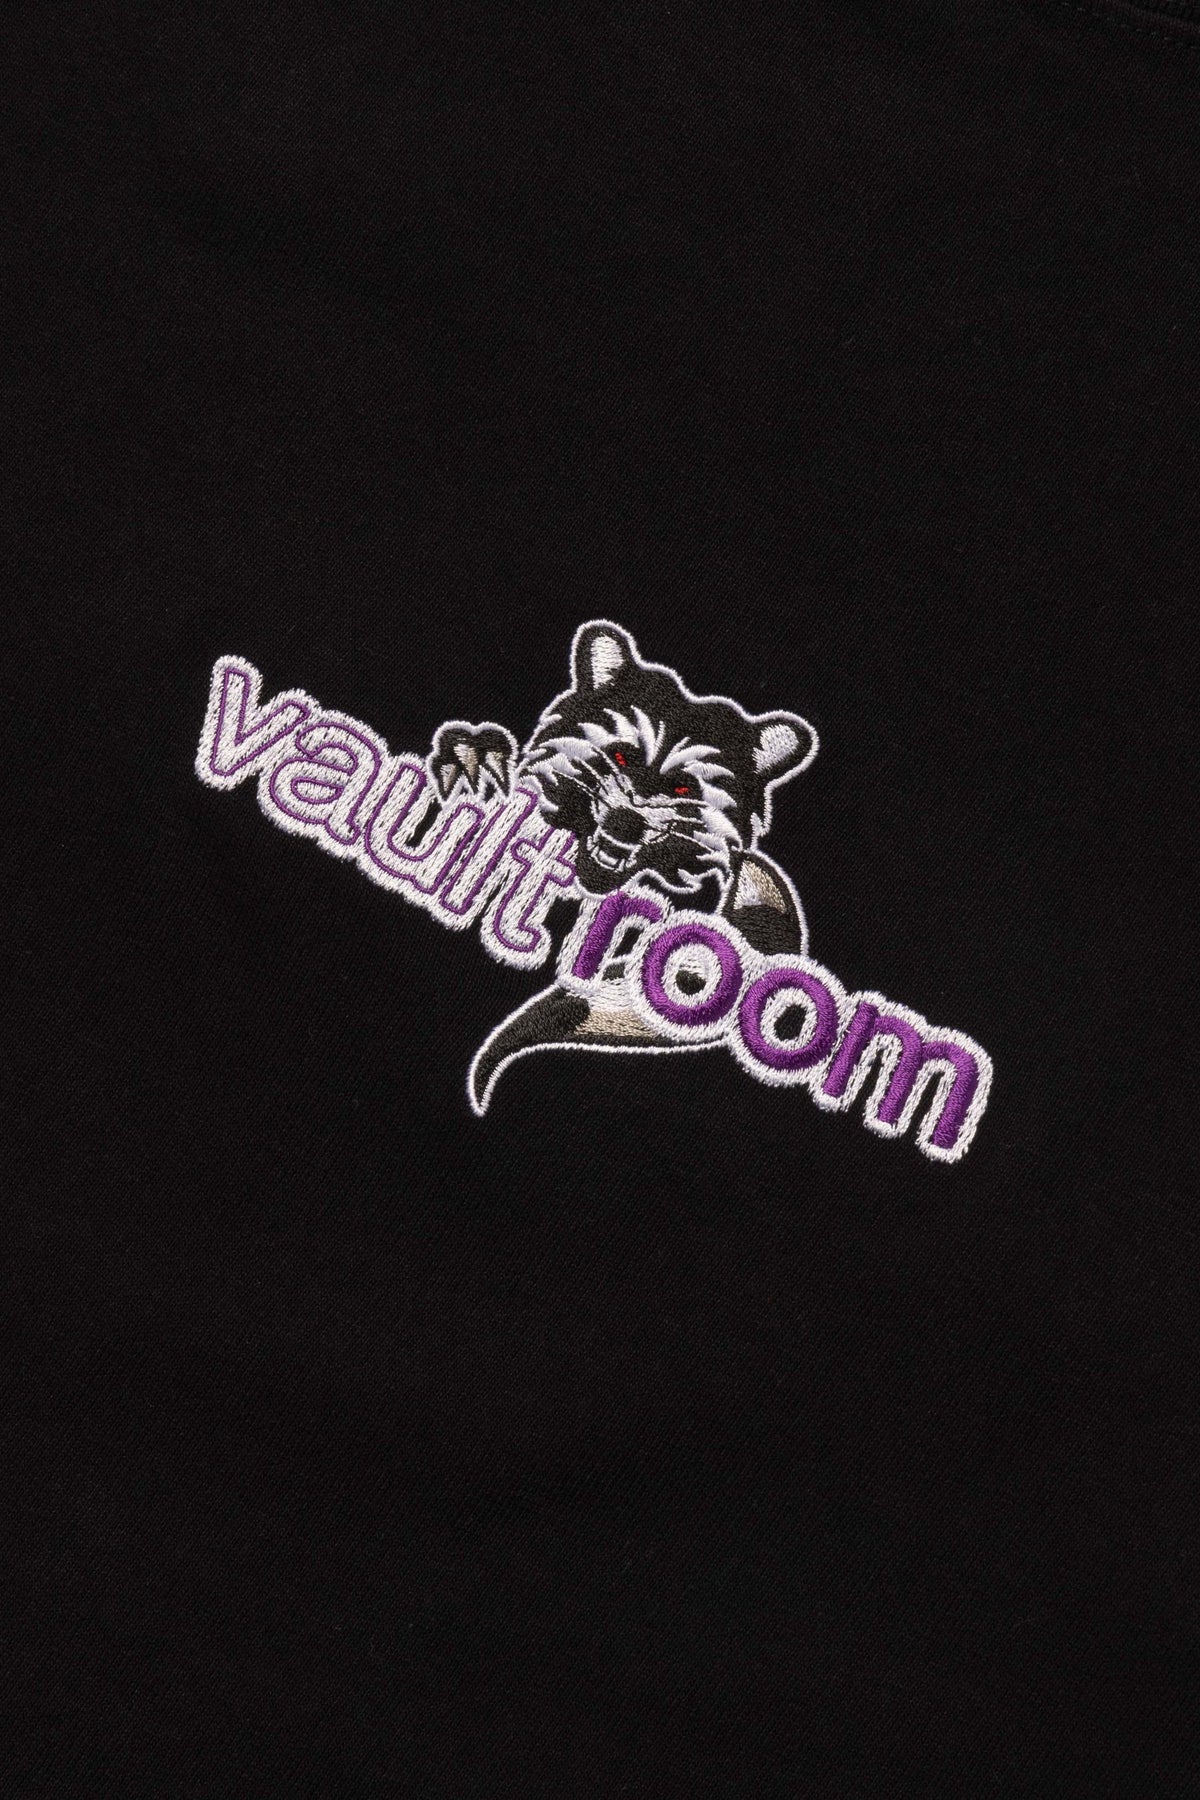 vaultroom \